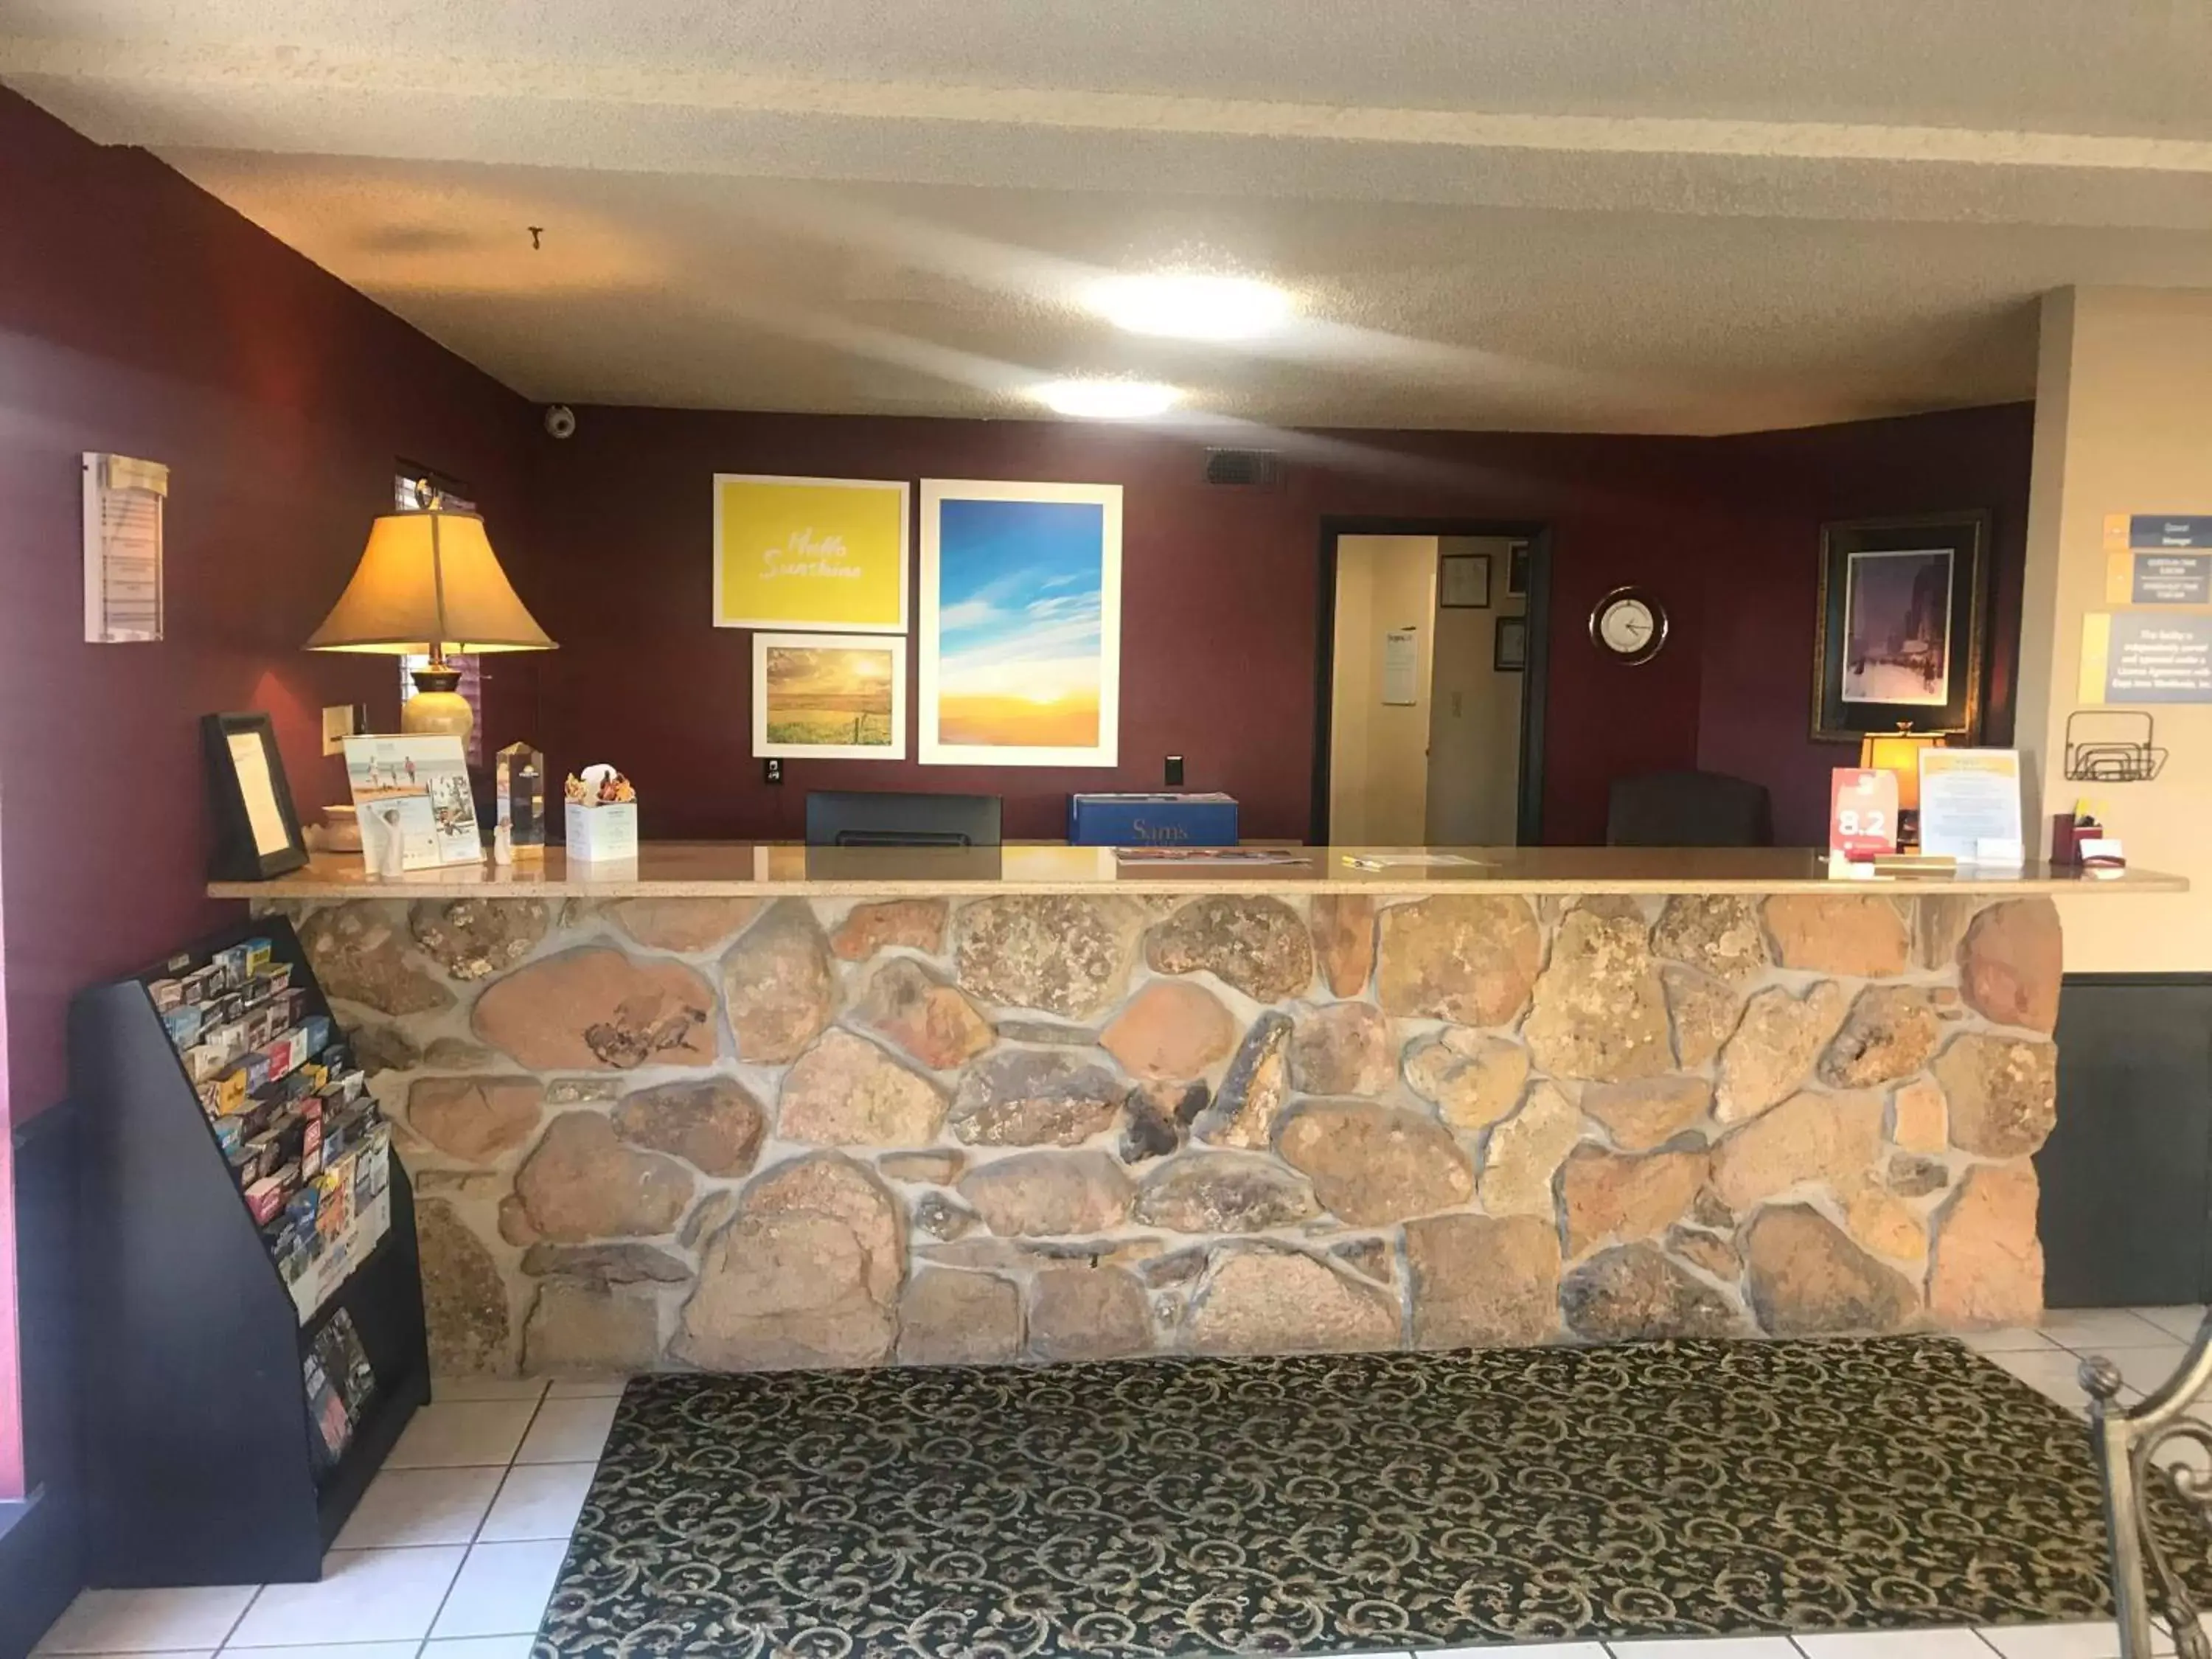 Lobby or reception, Lobby/Reception in Days Inn by Wyndham Abilene